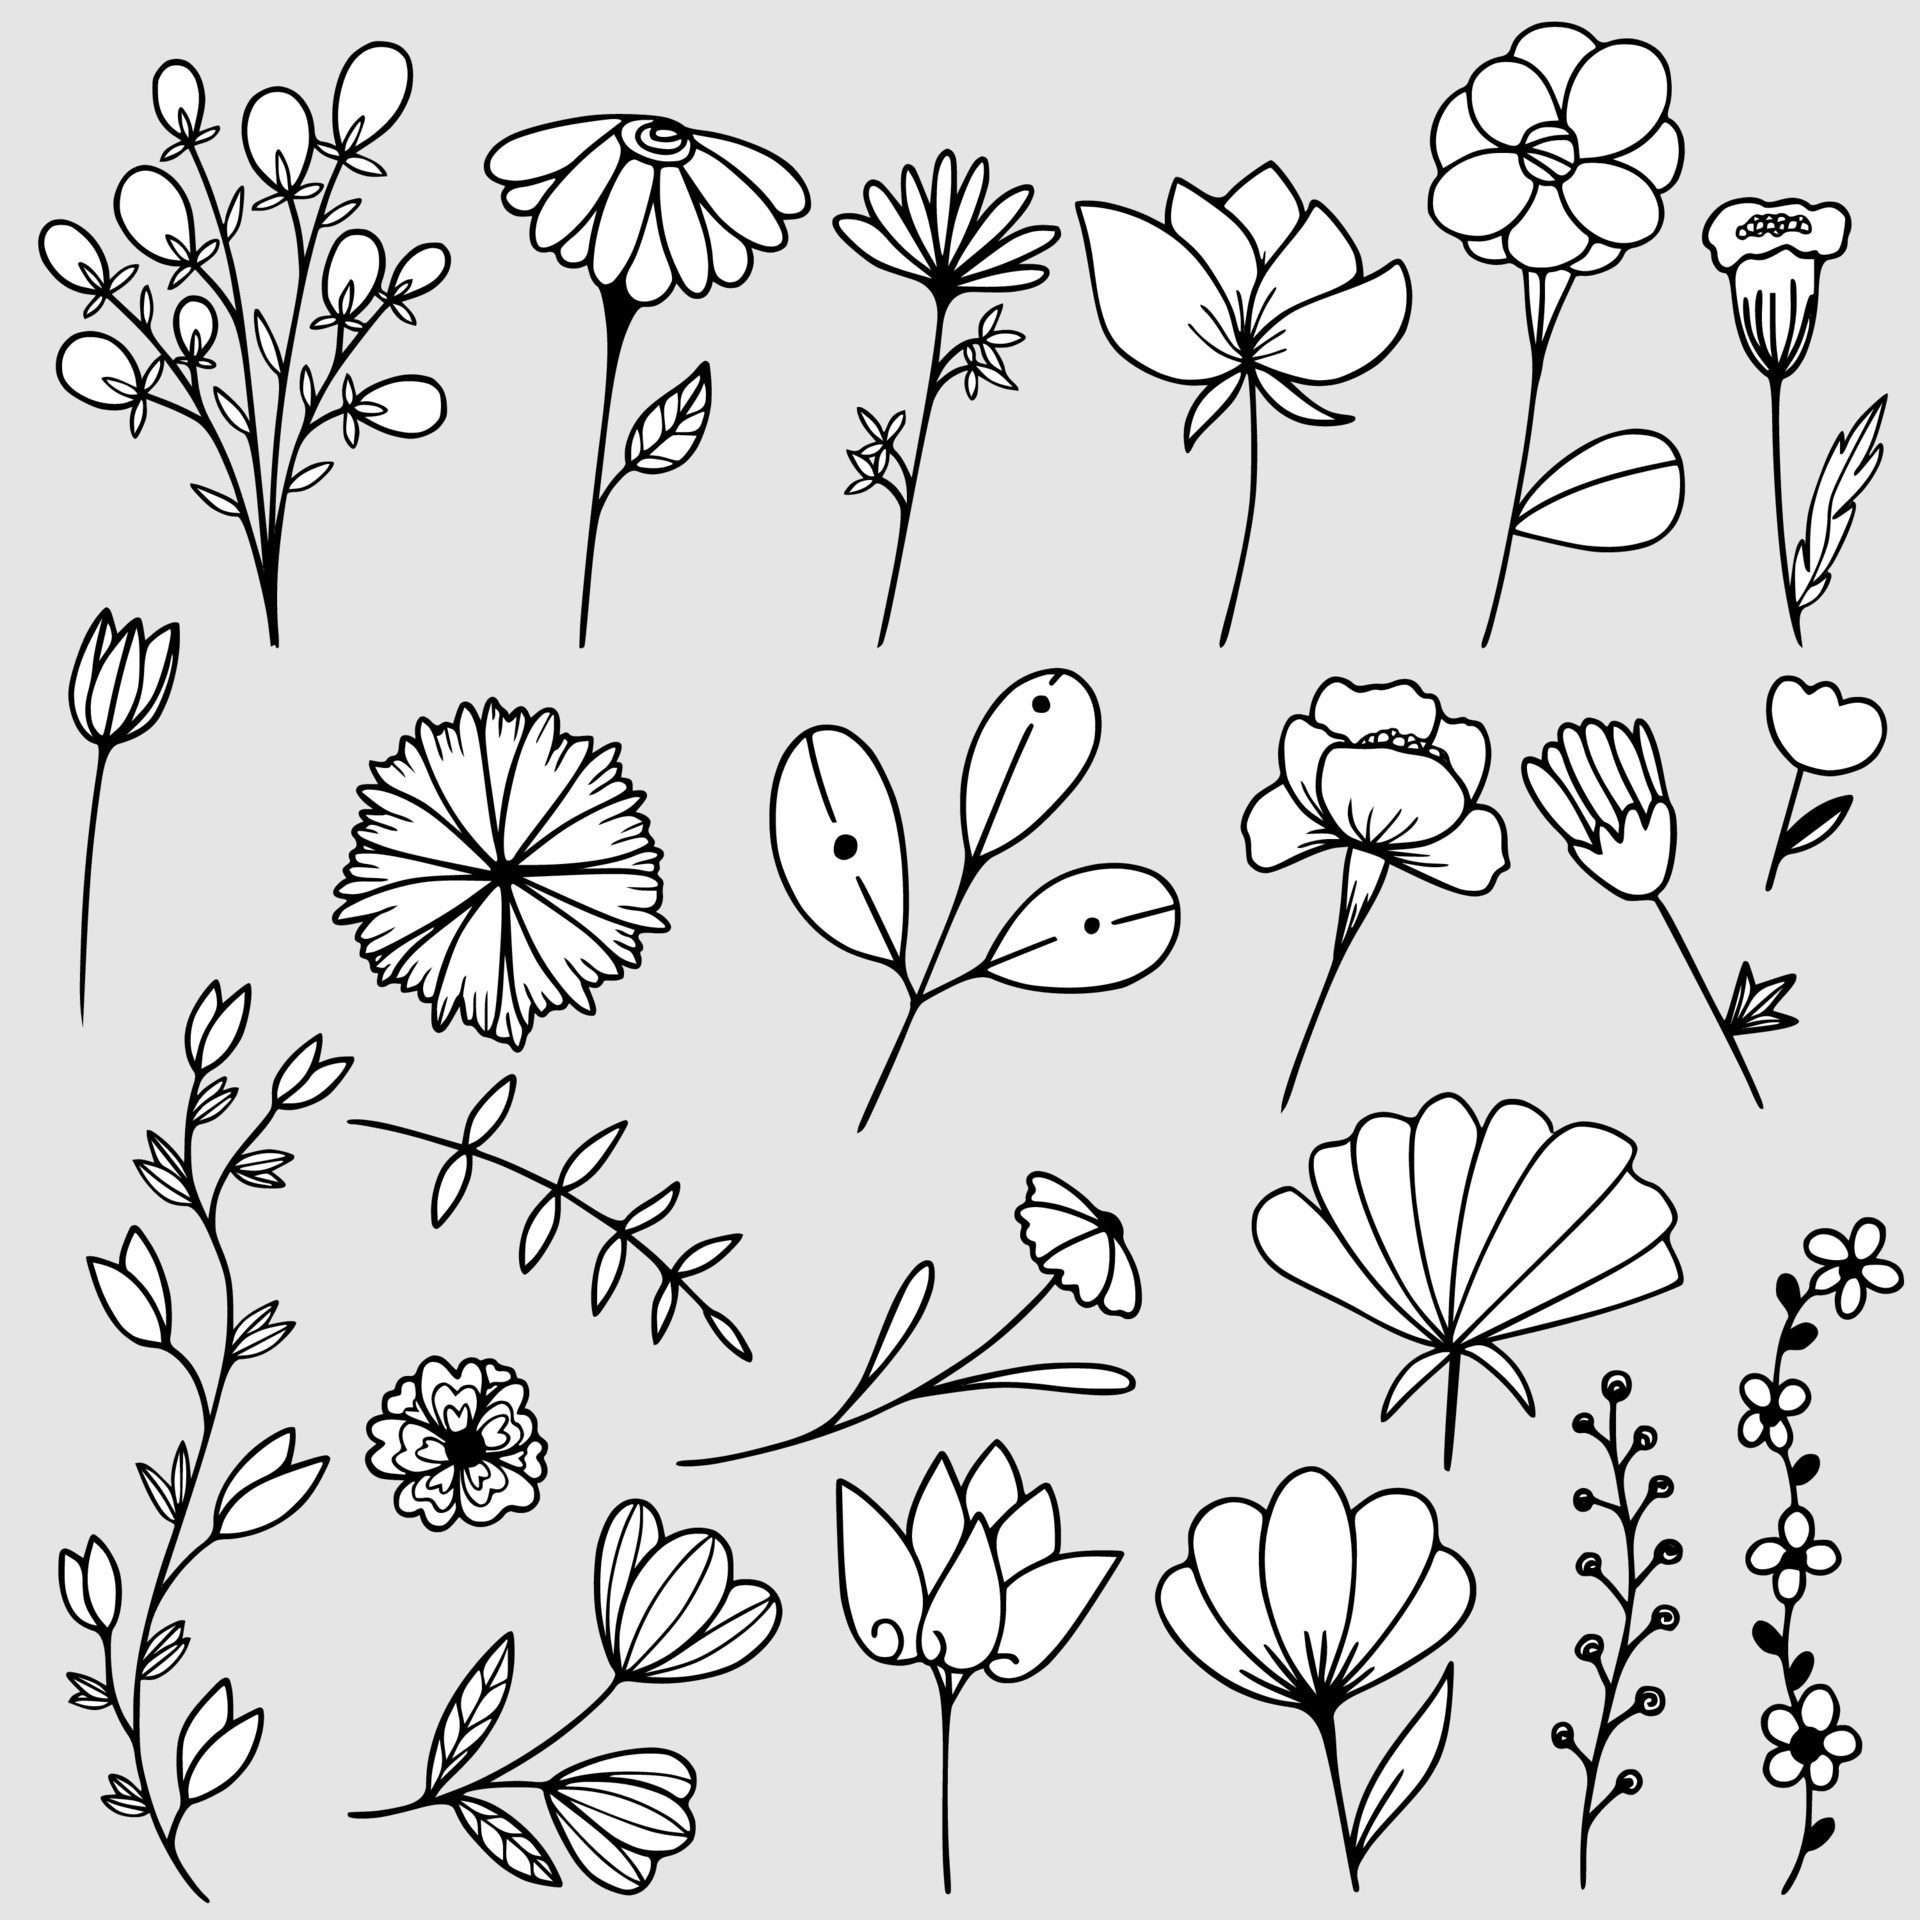 conjunto de desenho vegetal desenhado à mão estilo doodle 2550196 Vetor no  Vecteezy